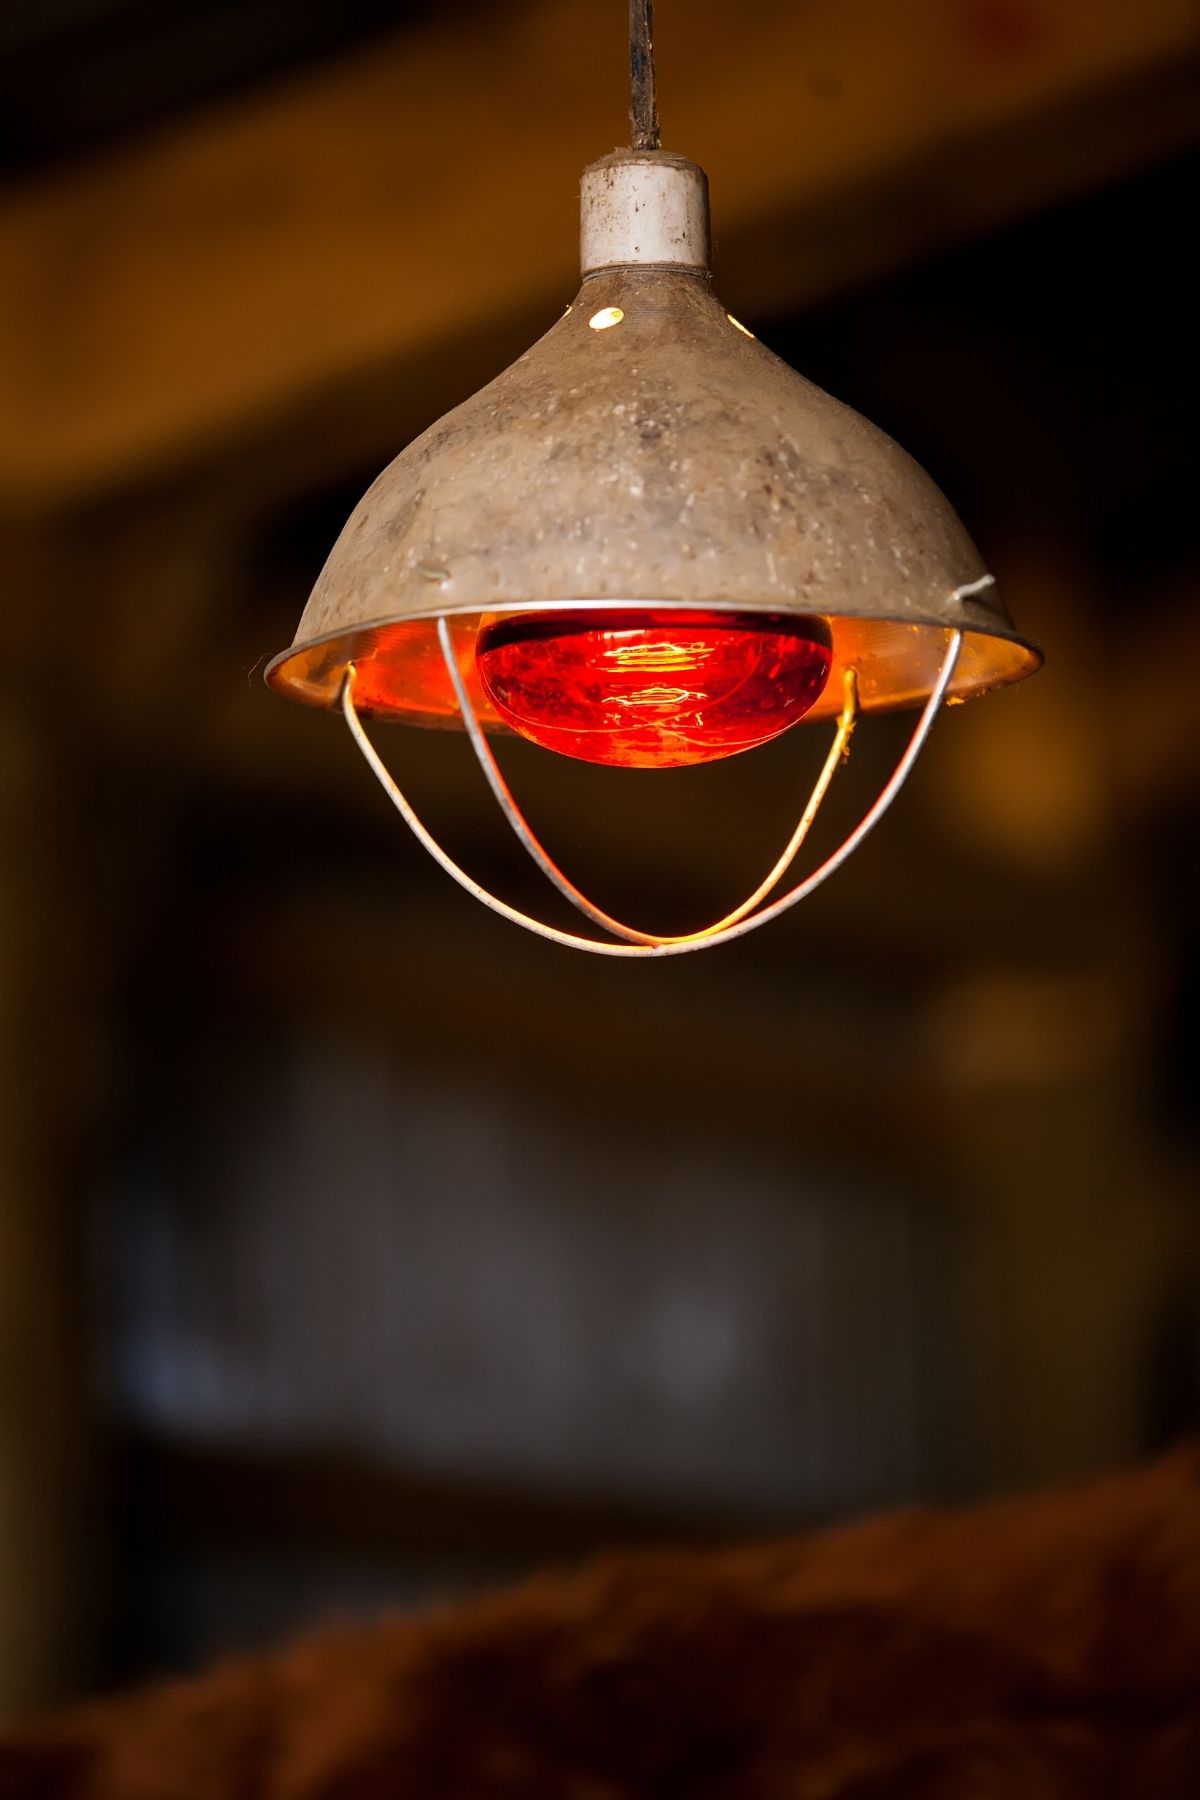 Red Heat Lamp in Calving Barn